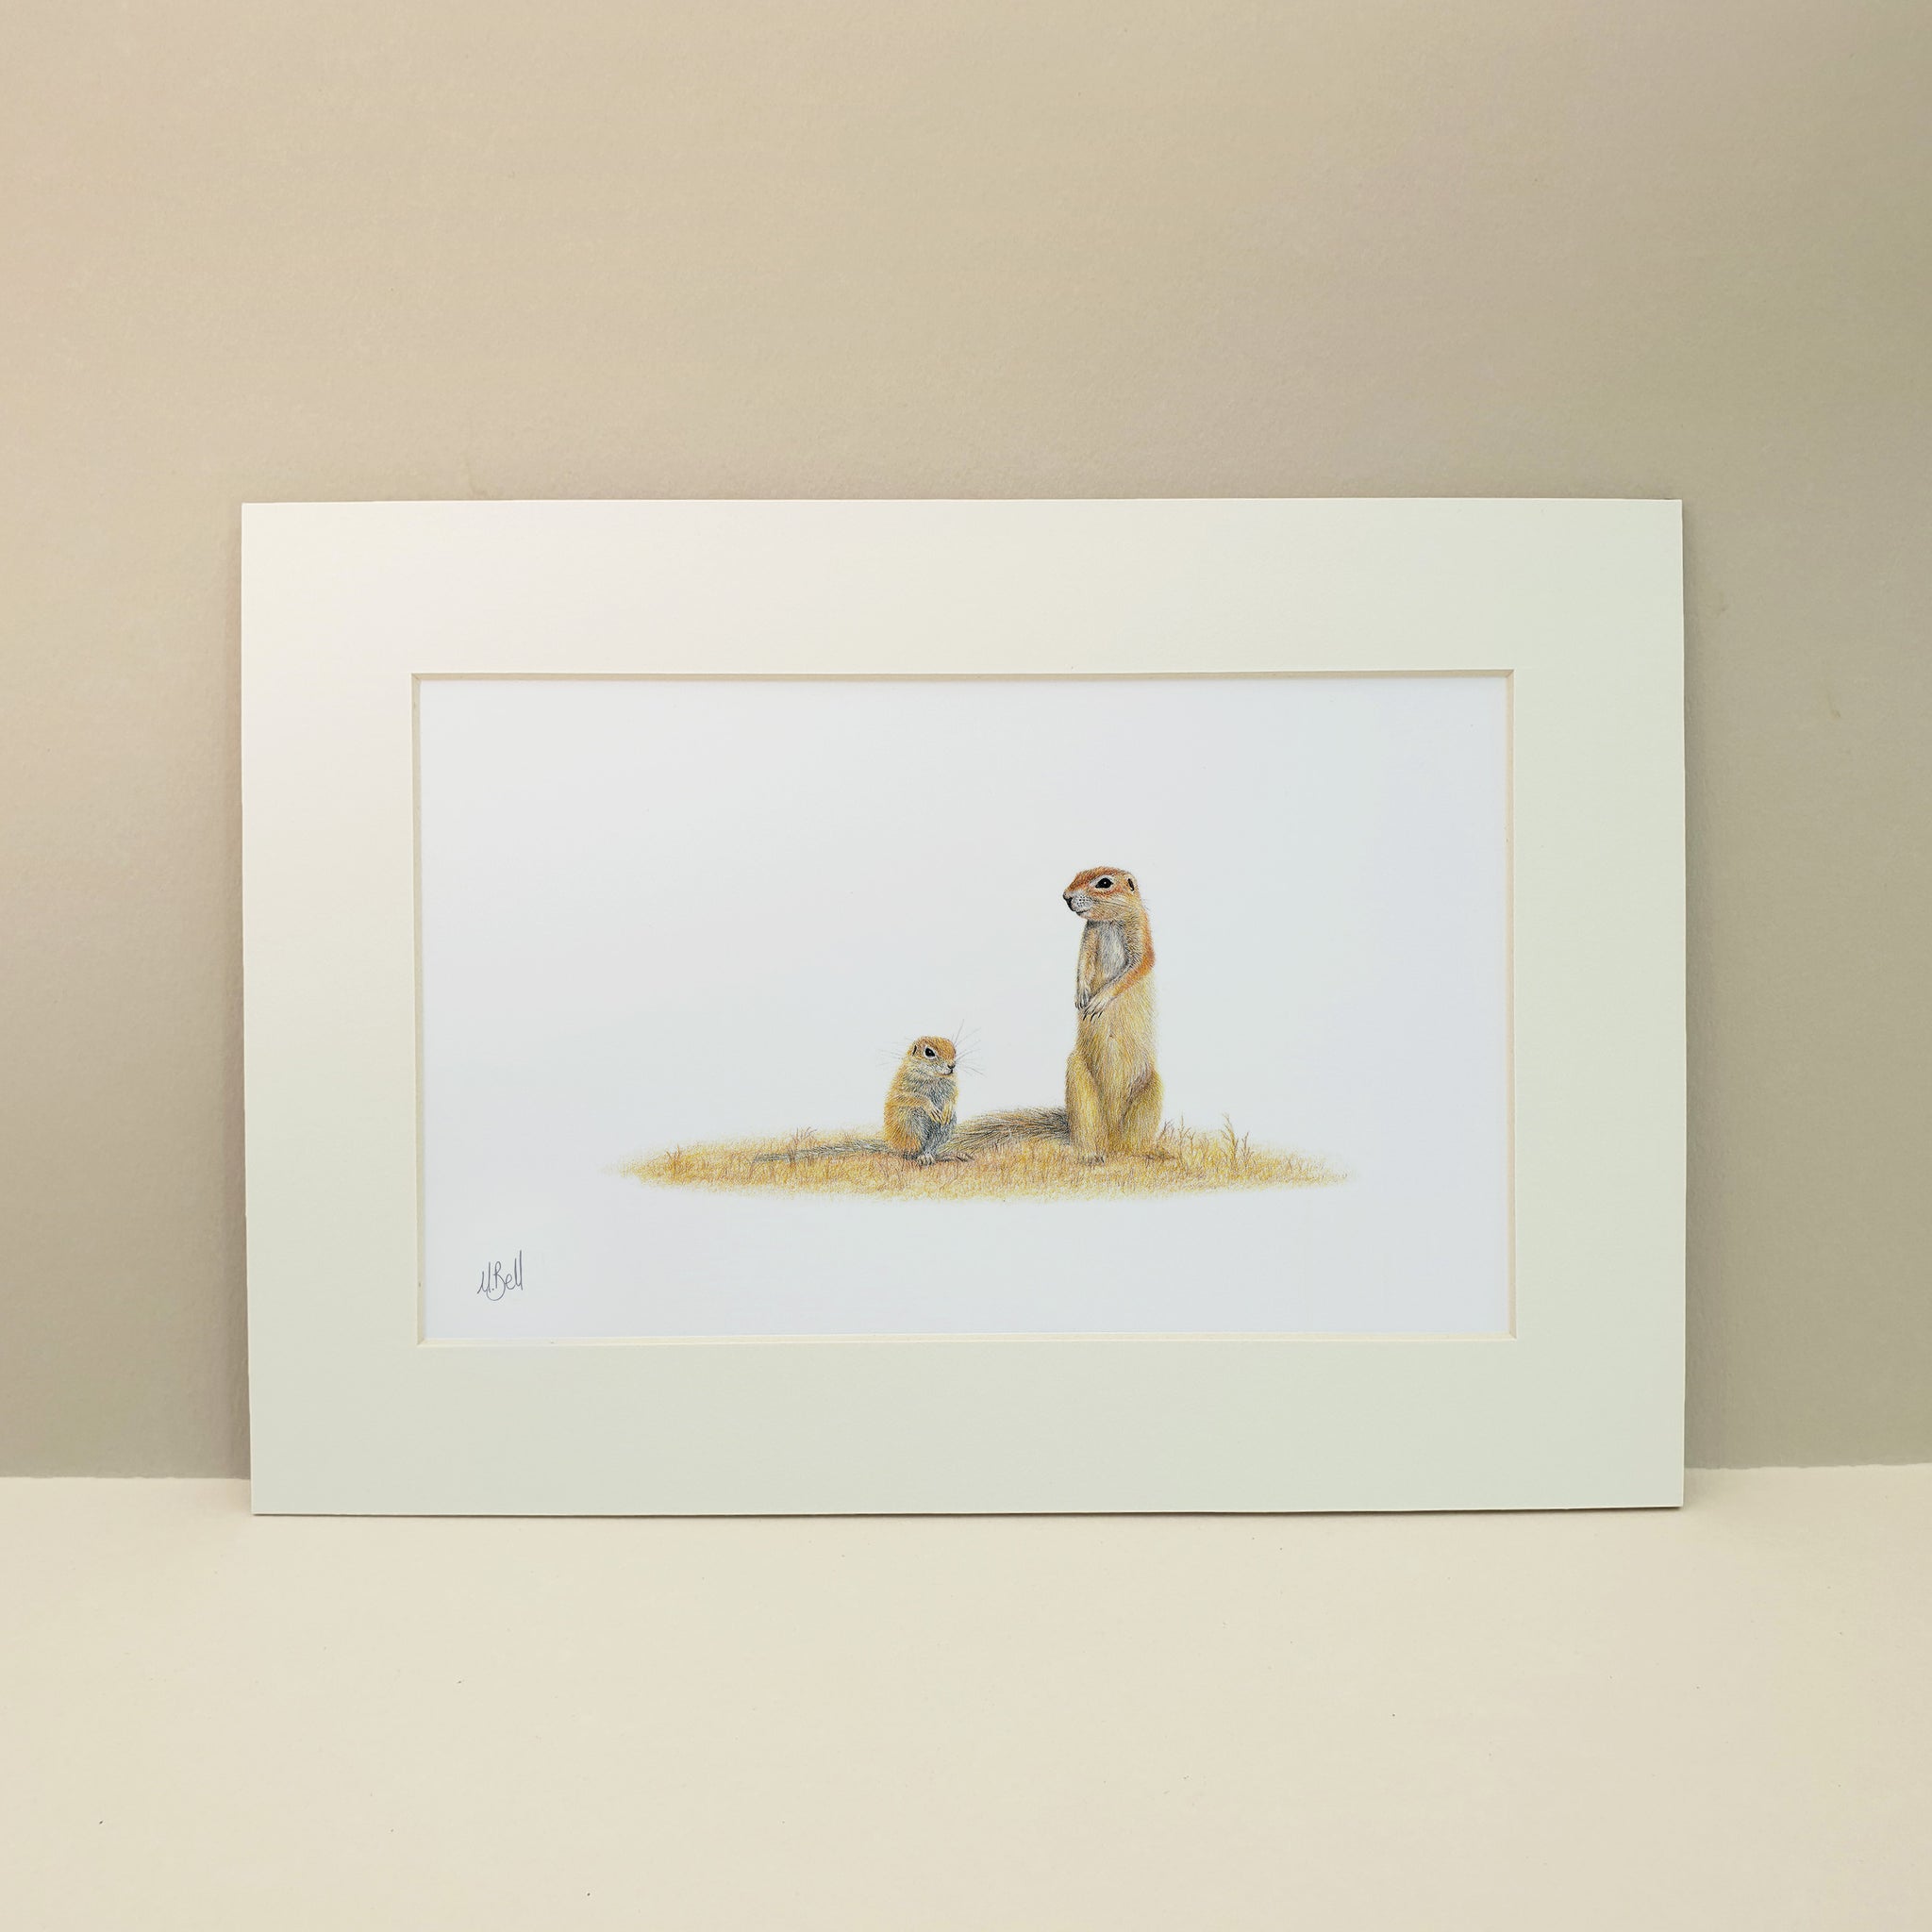 Ground Squirrels in the Kgalagadi desert print by artist Matthew Bell